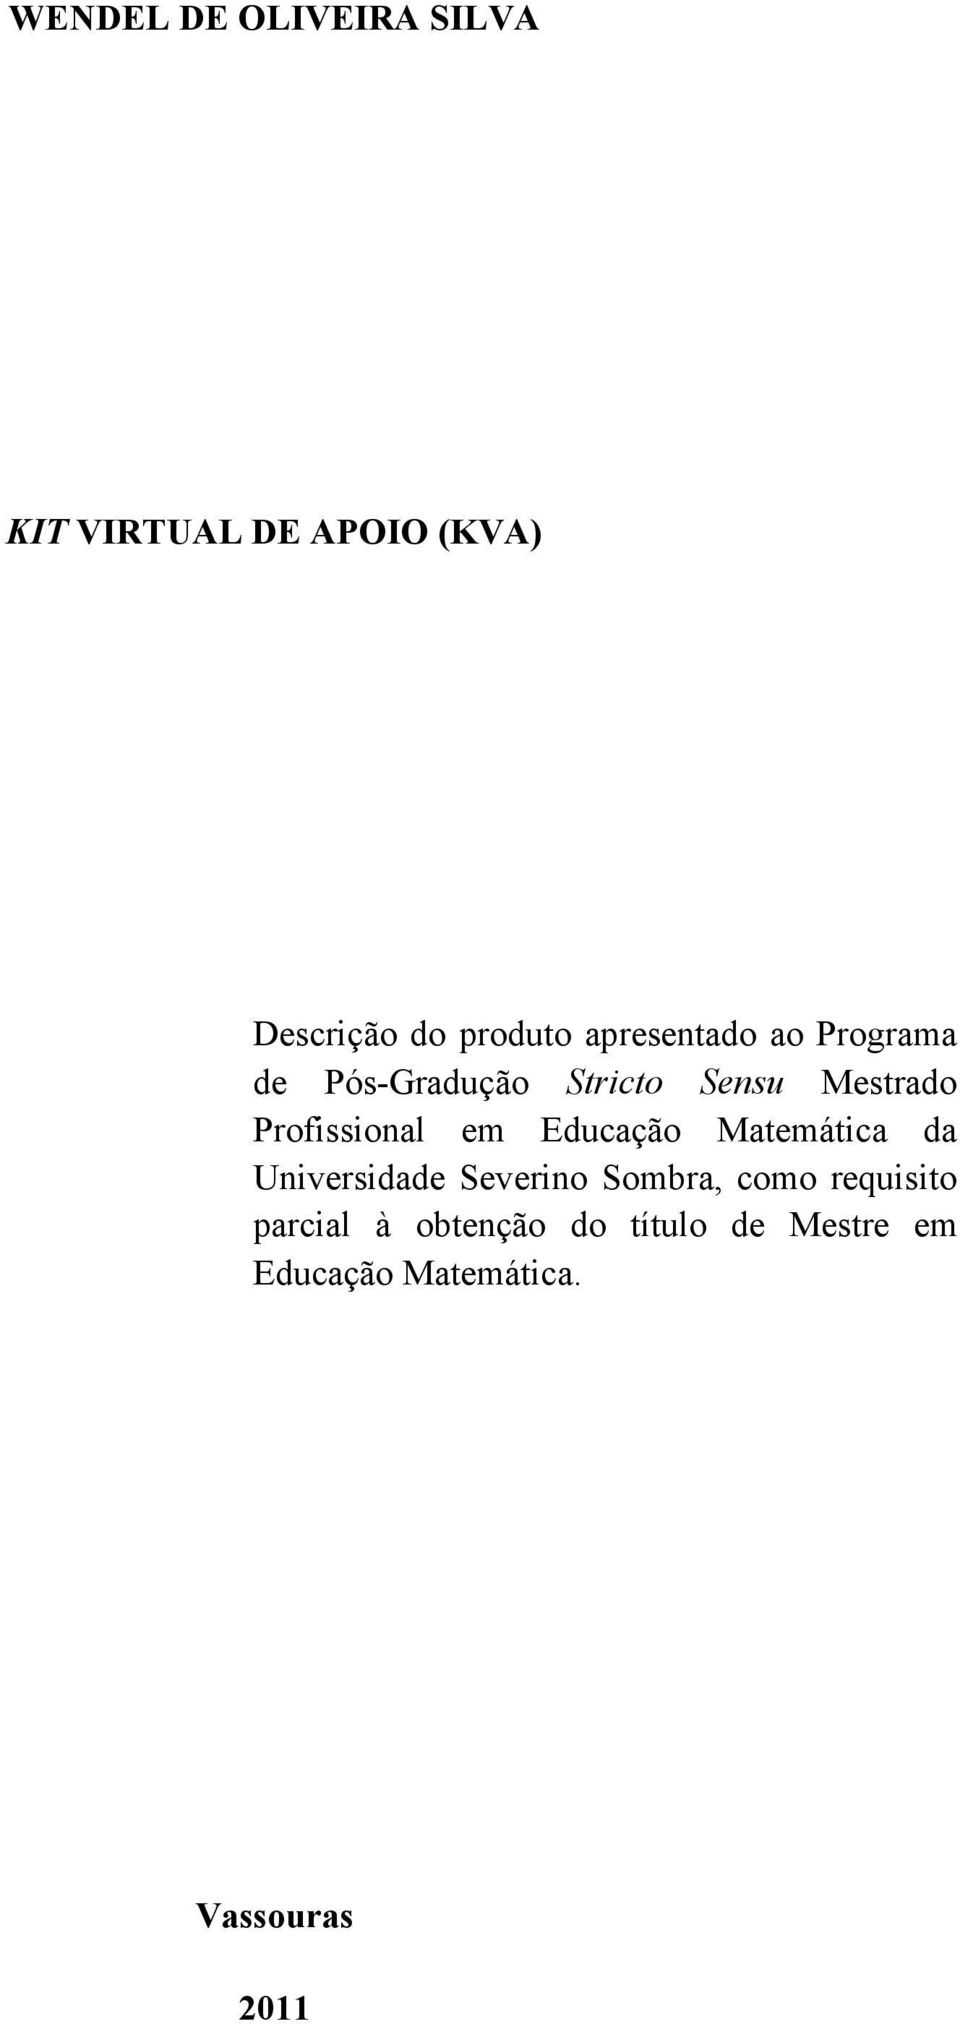 Profissional em Educação Matemática da Universidade Severino Sombra, como